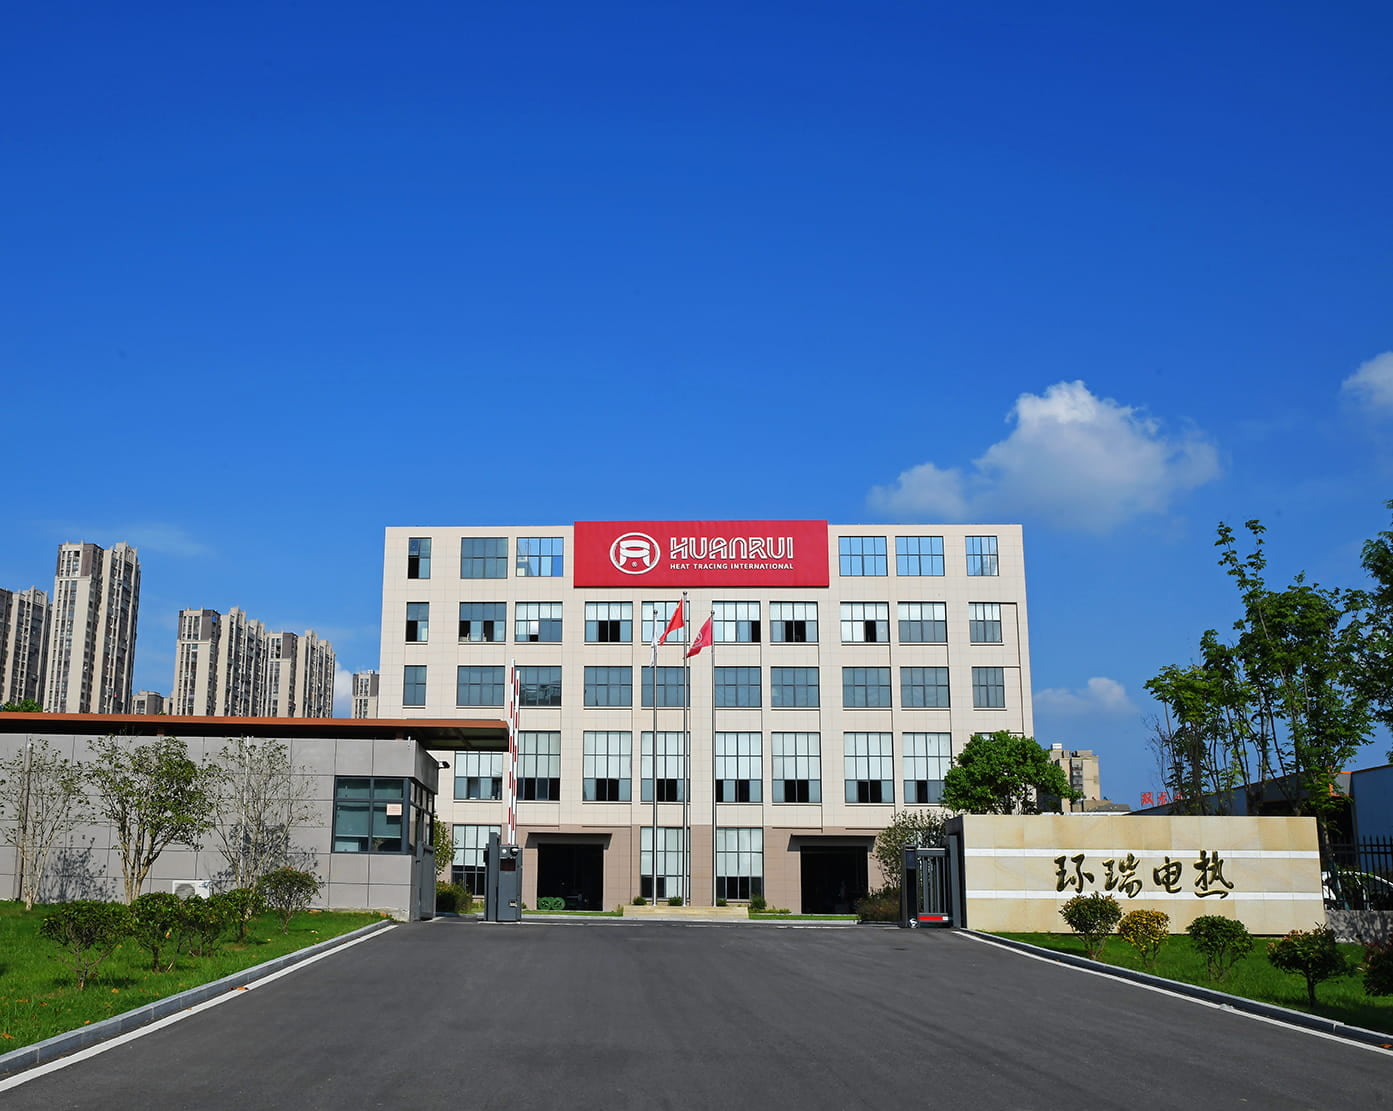 Il nastro riscaldante elettrico Huanrui viene utilizzato per il tracciamento elettrico e l'isolamento delle apparecchiature nell'area della fabbrica di spandex Hyosung di proprietà straniera
        